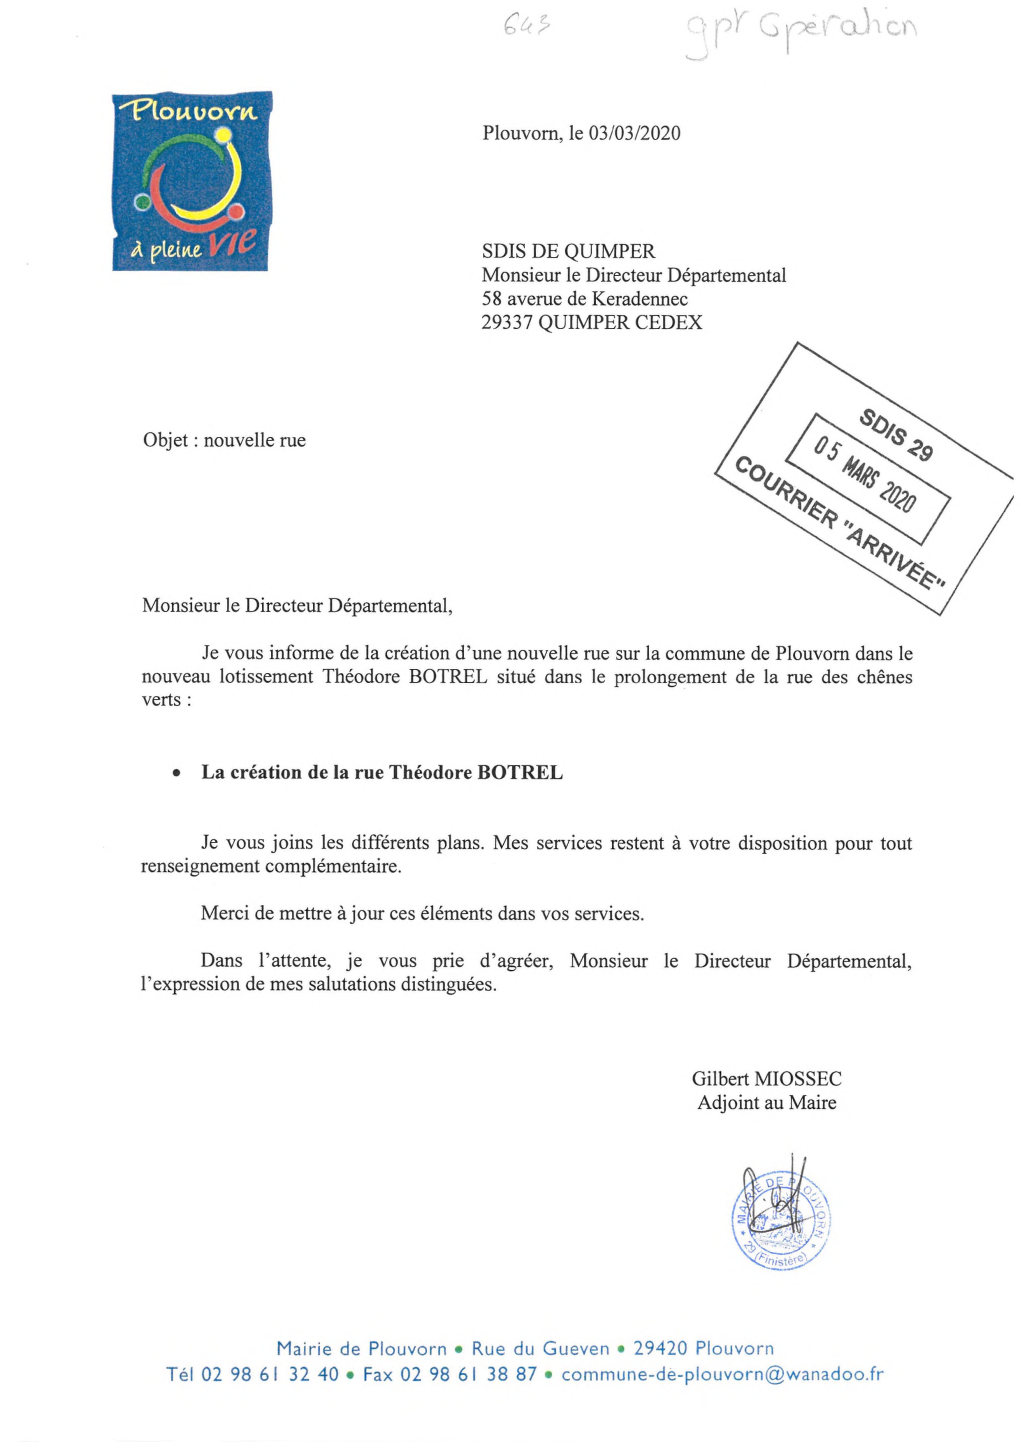 SDIS DE QUIMPER Monsieur Le Directeur Départemental 58 Averne De Keradennec 29337 QUIMPER CEDEX